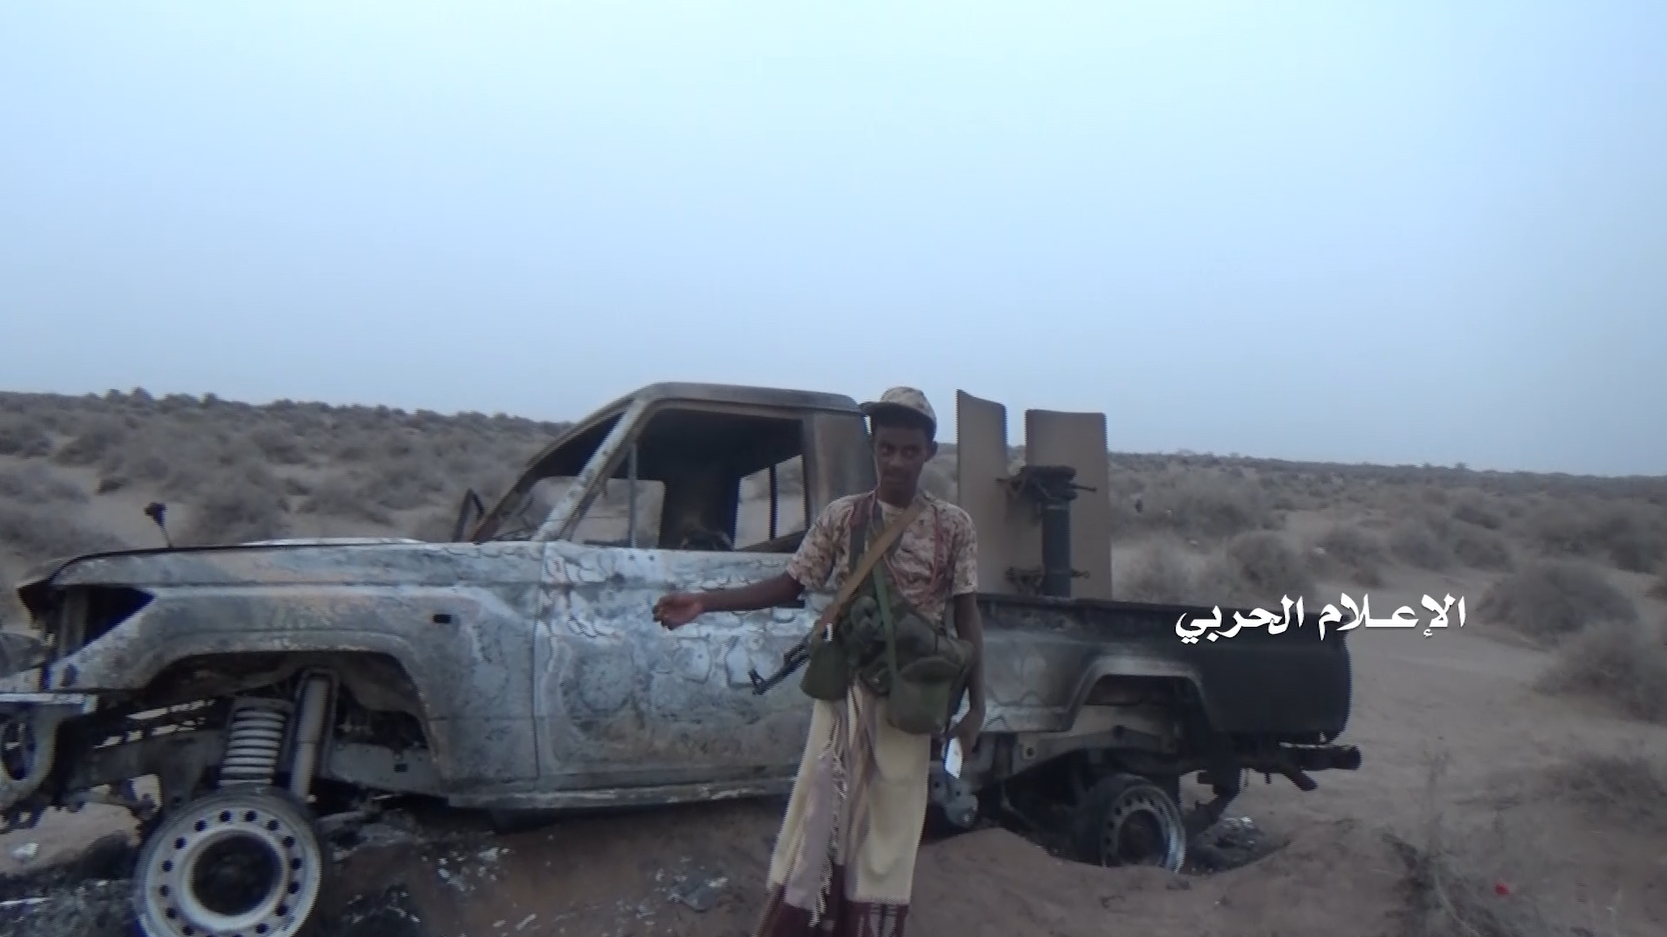 الساحل الغربي – مقابلات مع المجاهدين شمال التحيتا ورسائل الى السيد حسن والشعب اليمني